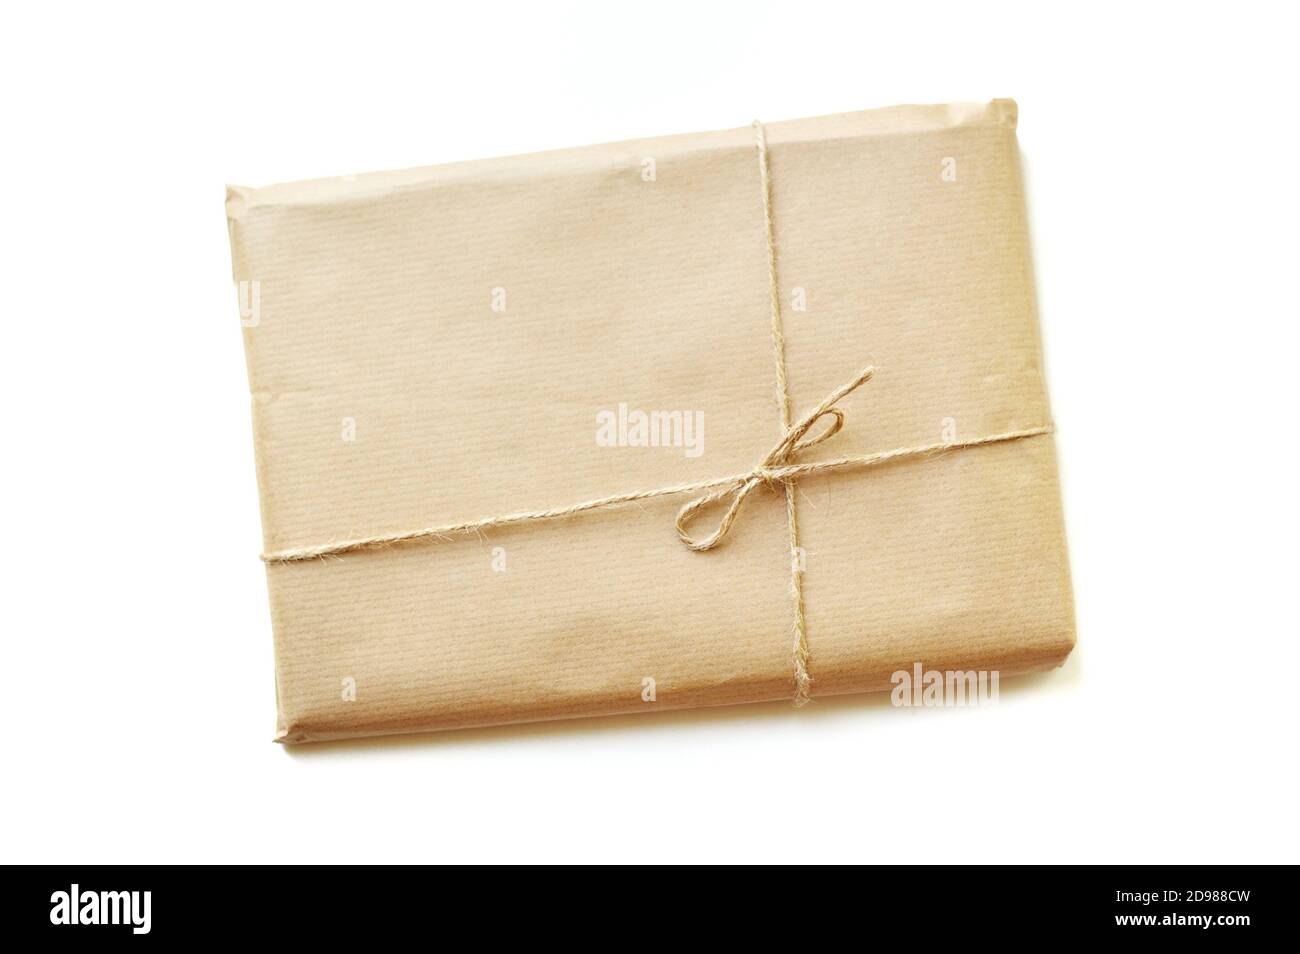 Confezione regalo rustica confezionata in carta marrone legata da spago con spazio vuoto su sfondo bianco con spazio per il testo Foto Stock